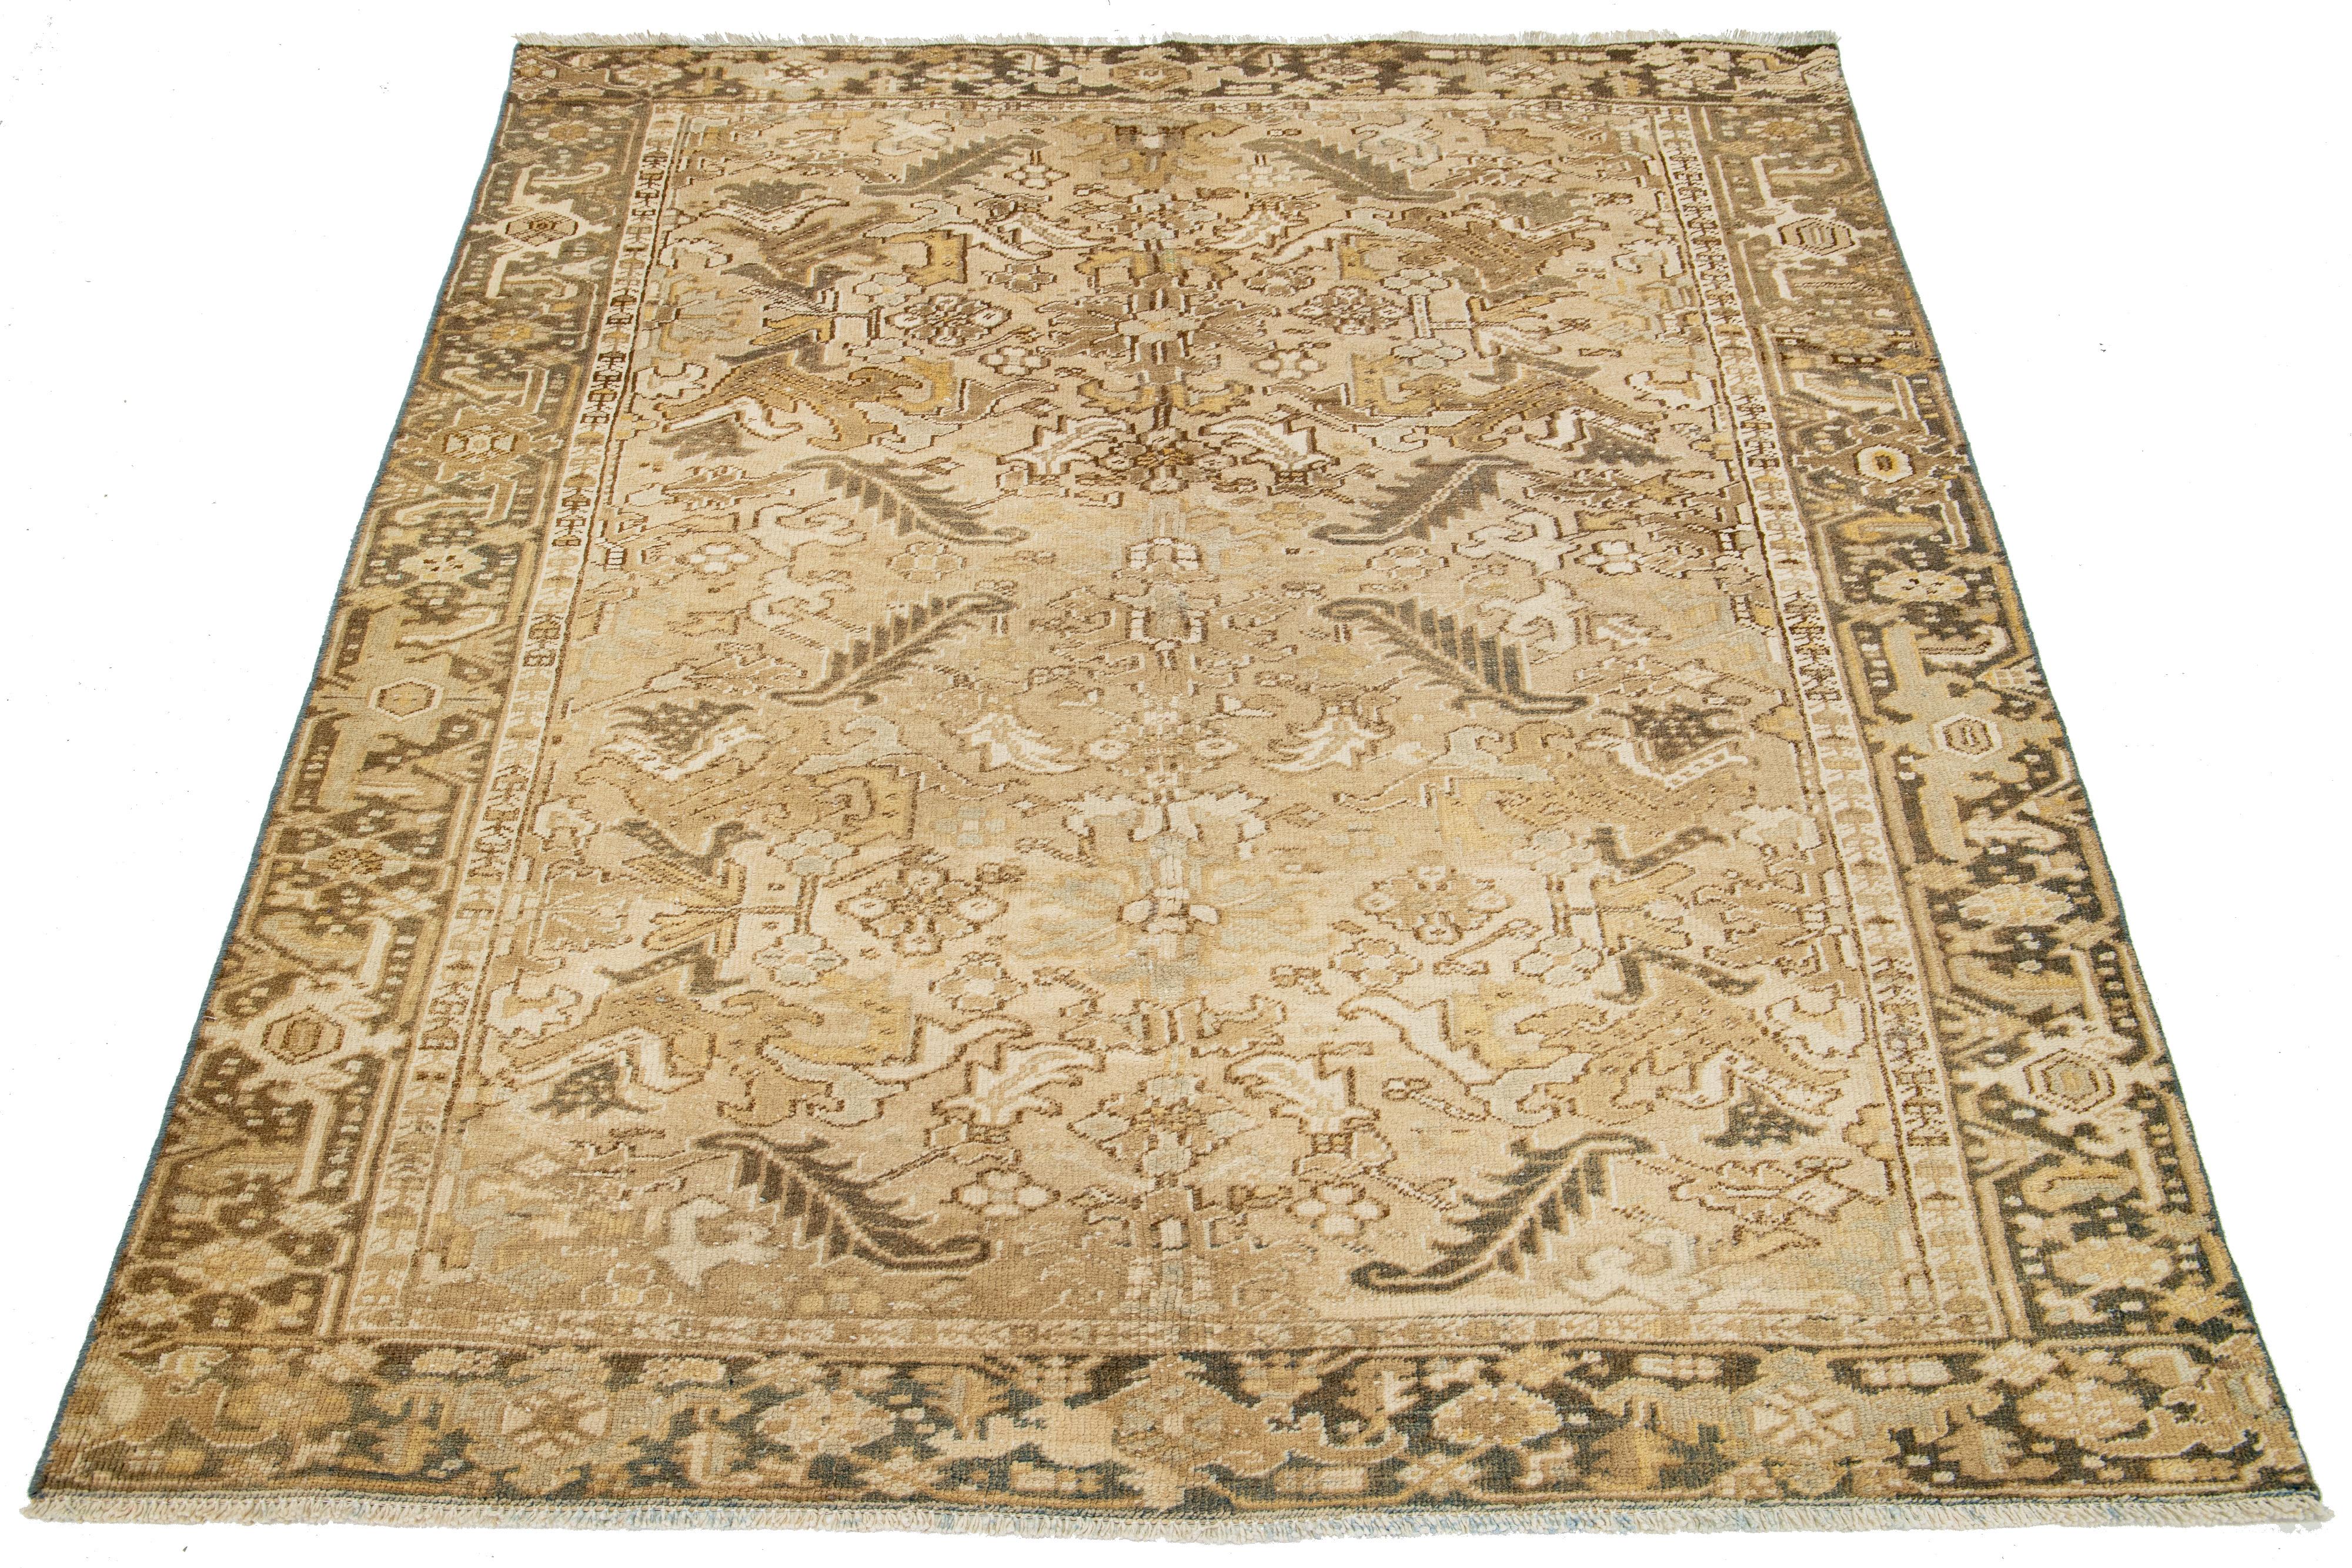 Ein antiker Heriz-Teppich aus Persien wird aus Wolle handgeknüpft. Es hat ein beiges Feld mit einem blauen und braunen Allover-Muster.

Dieser Teppich misst 6'4' x 7'10